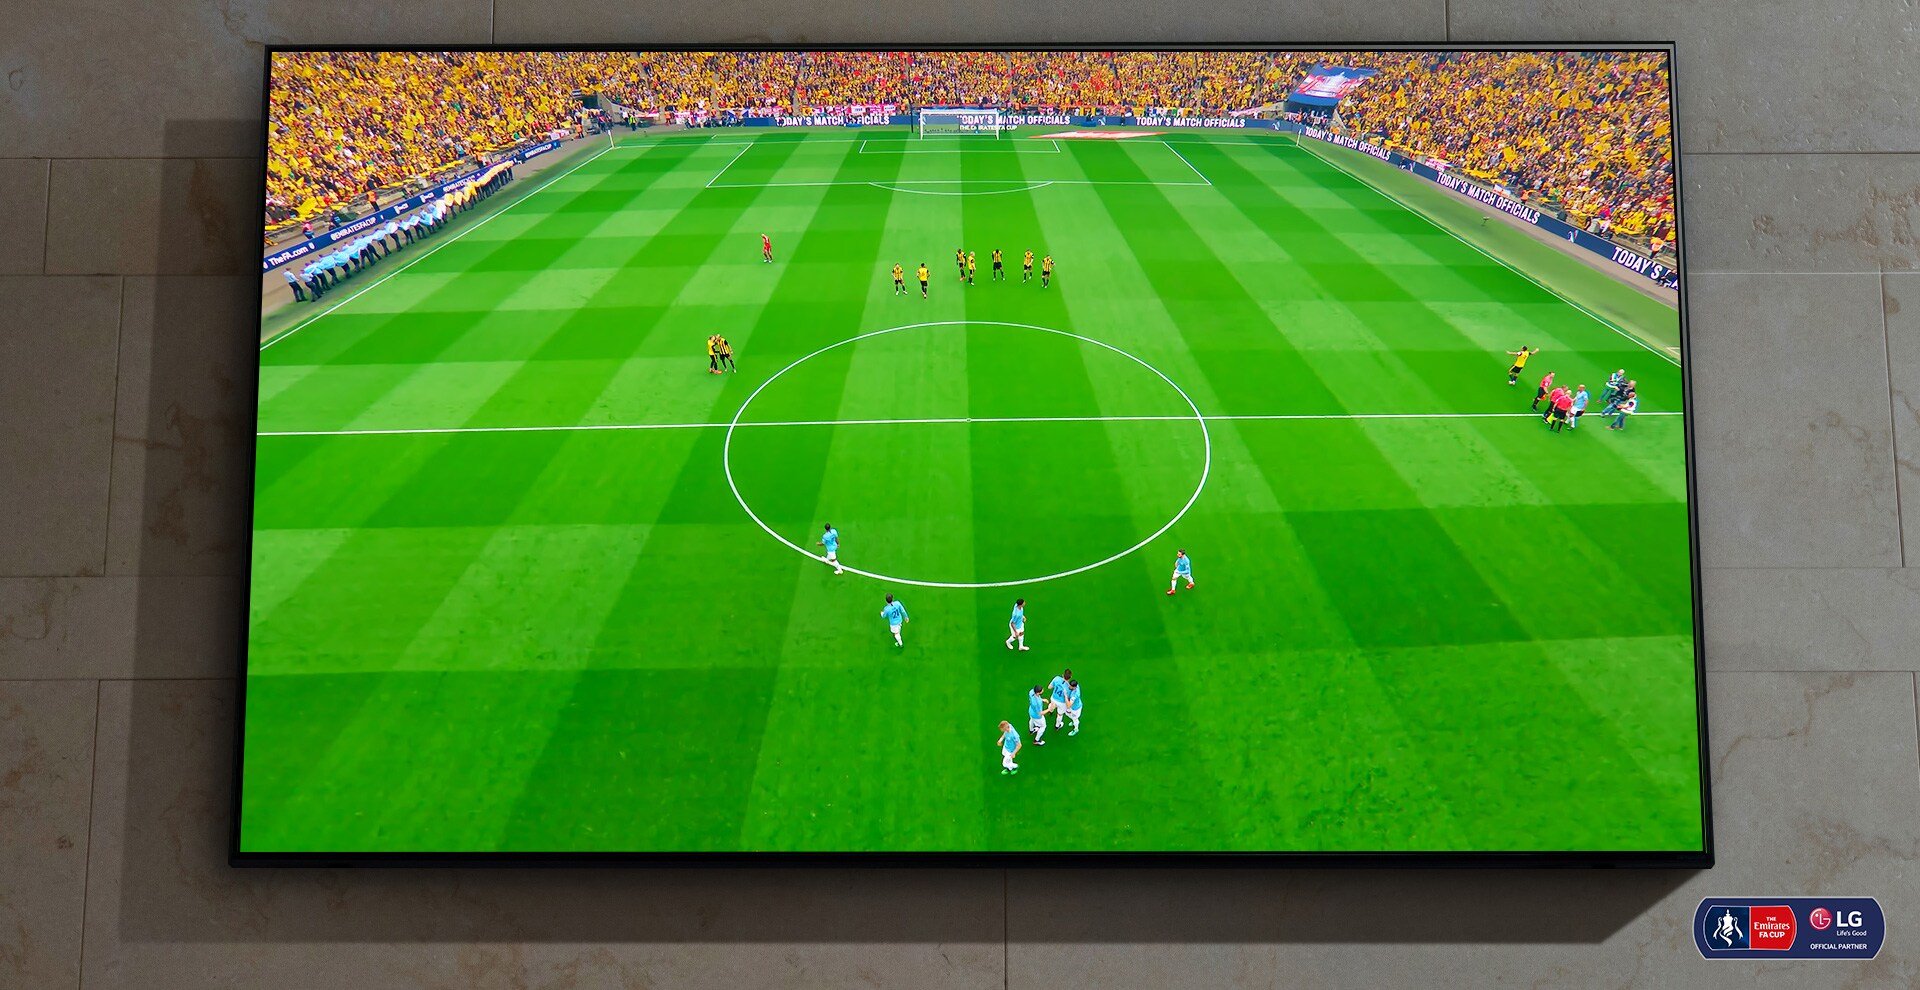 Der er et vægmonteret NanoCell-TV. En fodboldkamp skal til at starte på skærmen.